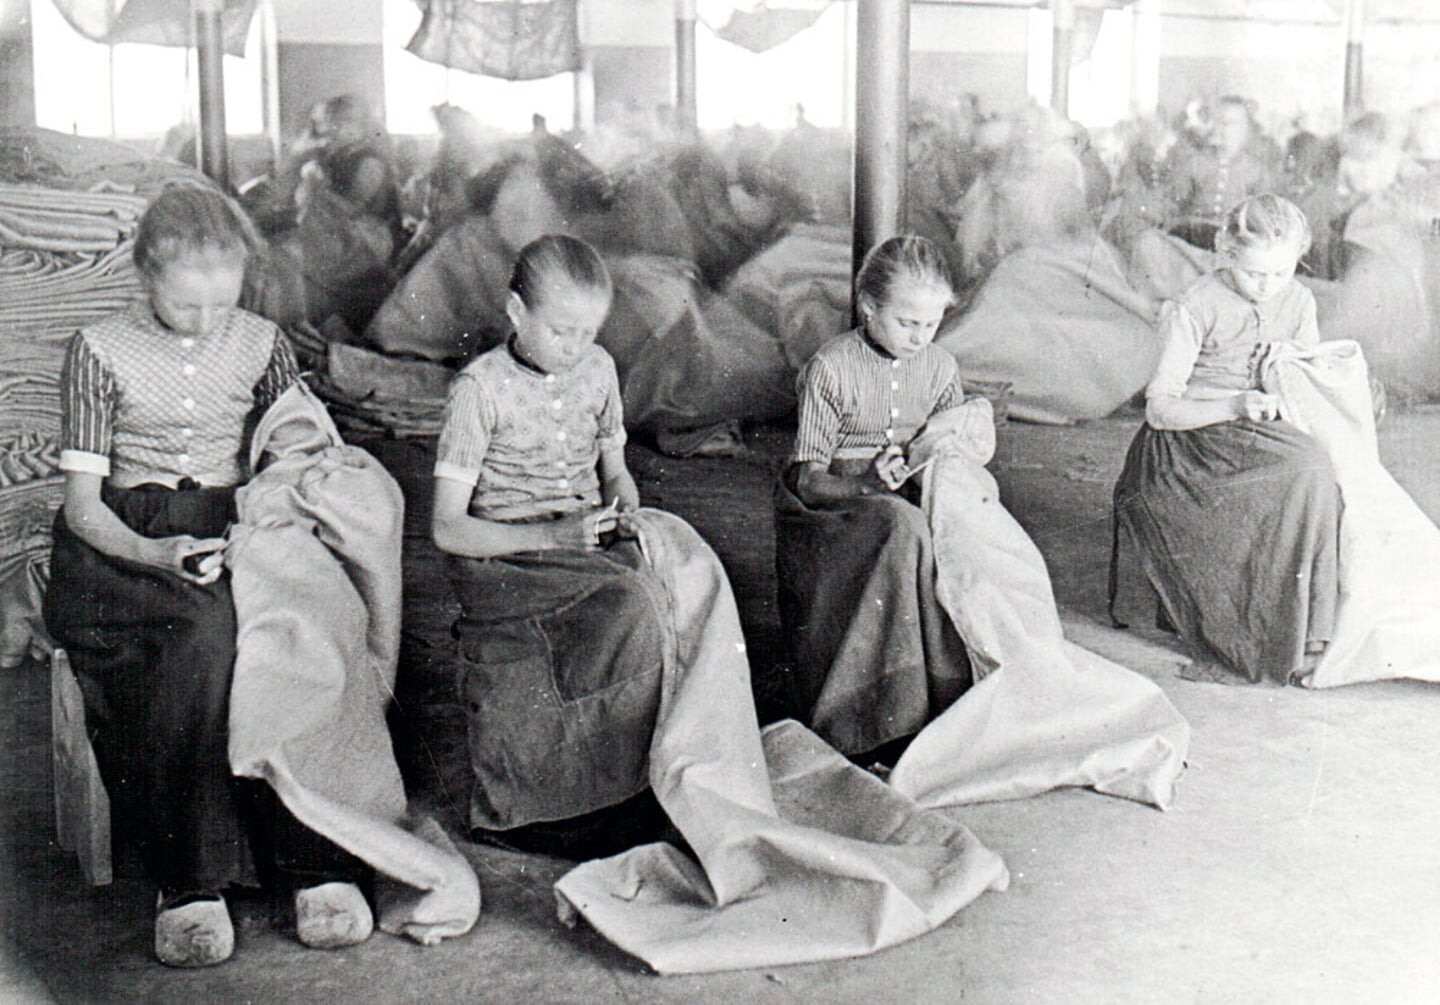 Kinderen naaien jute zakken. Kinderarbeid in fabrieken was een van de kwalijke gevolgen van de snelle modernisering van Nederland in de negentiende eeuw.